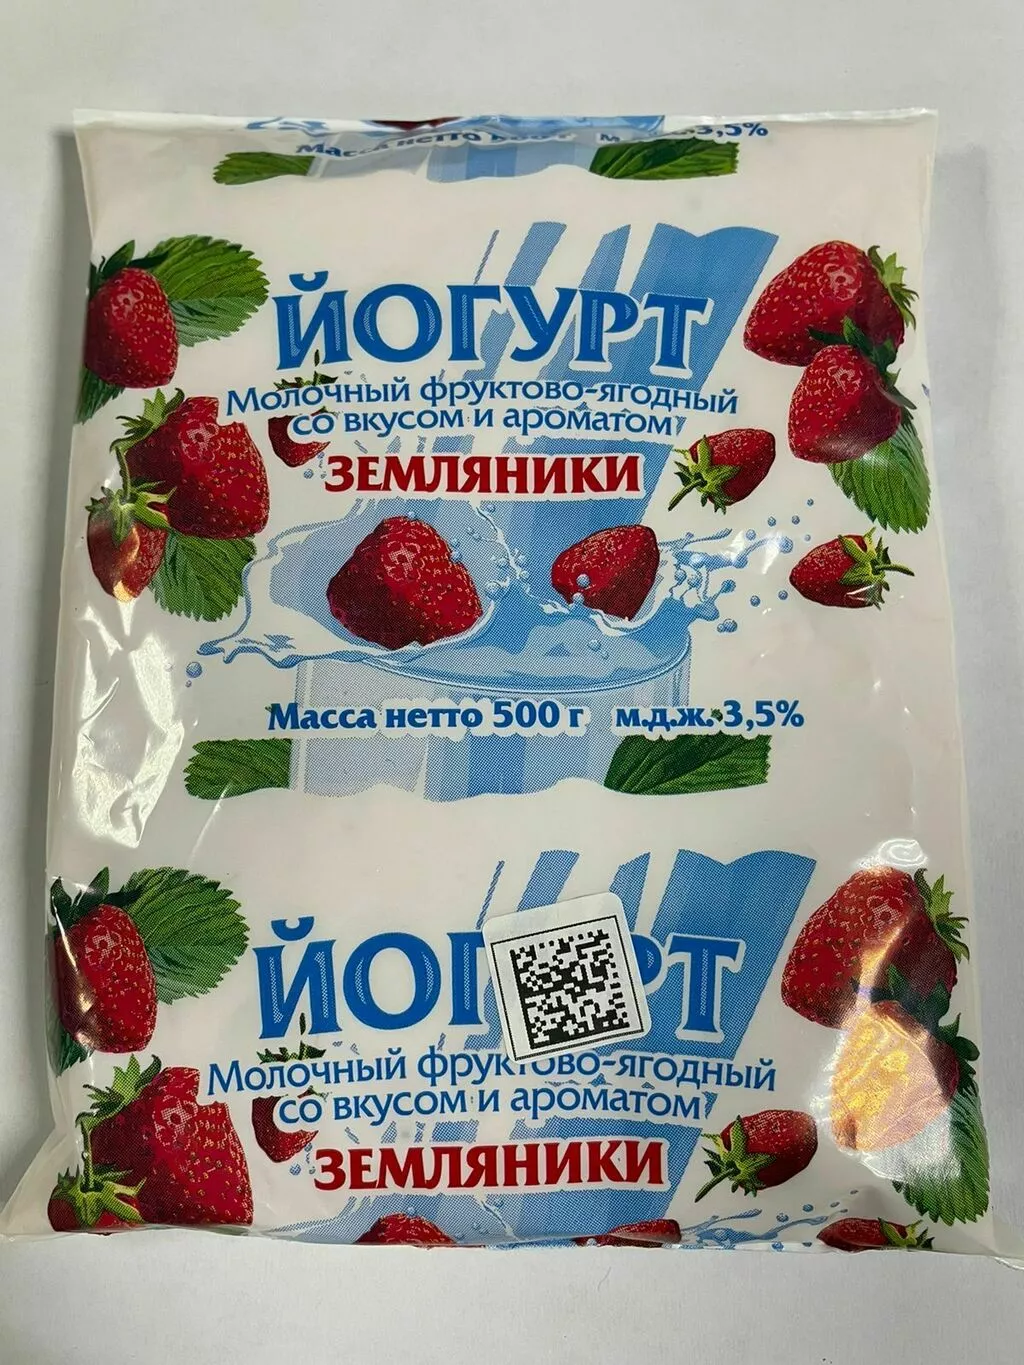 молочные продукты в ассортименте в Иркутске и Иркутской области 8